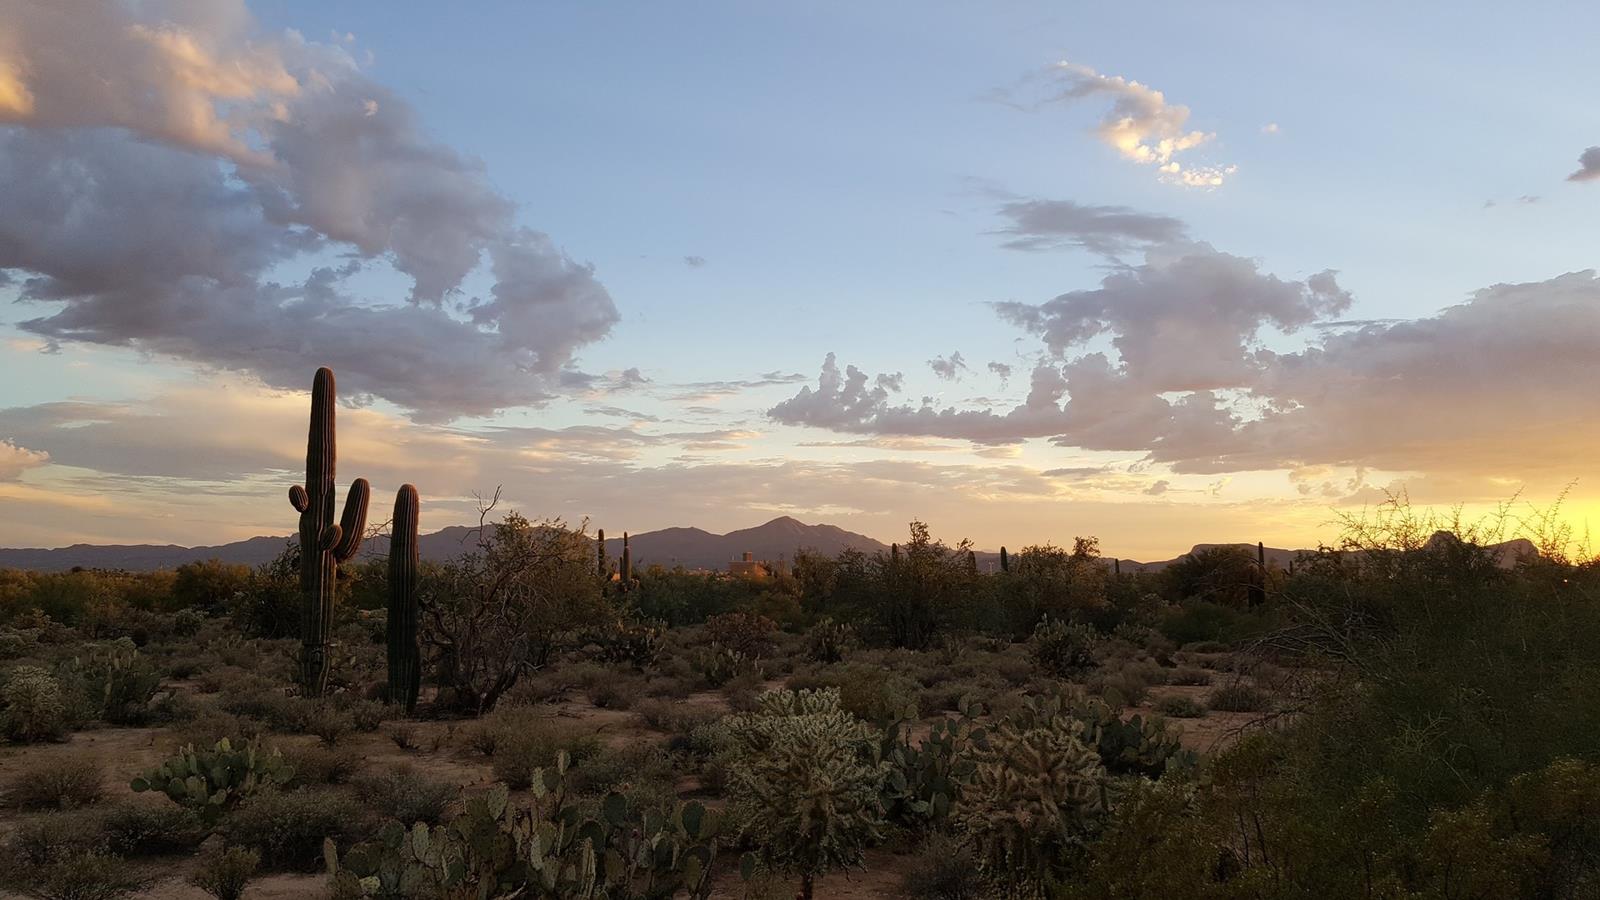 Saguaro cactus and sunset